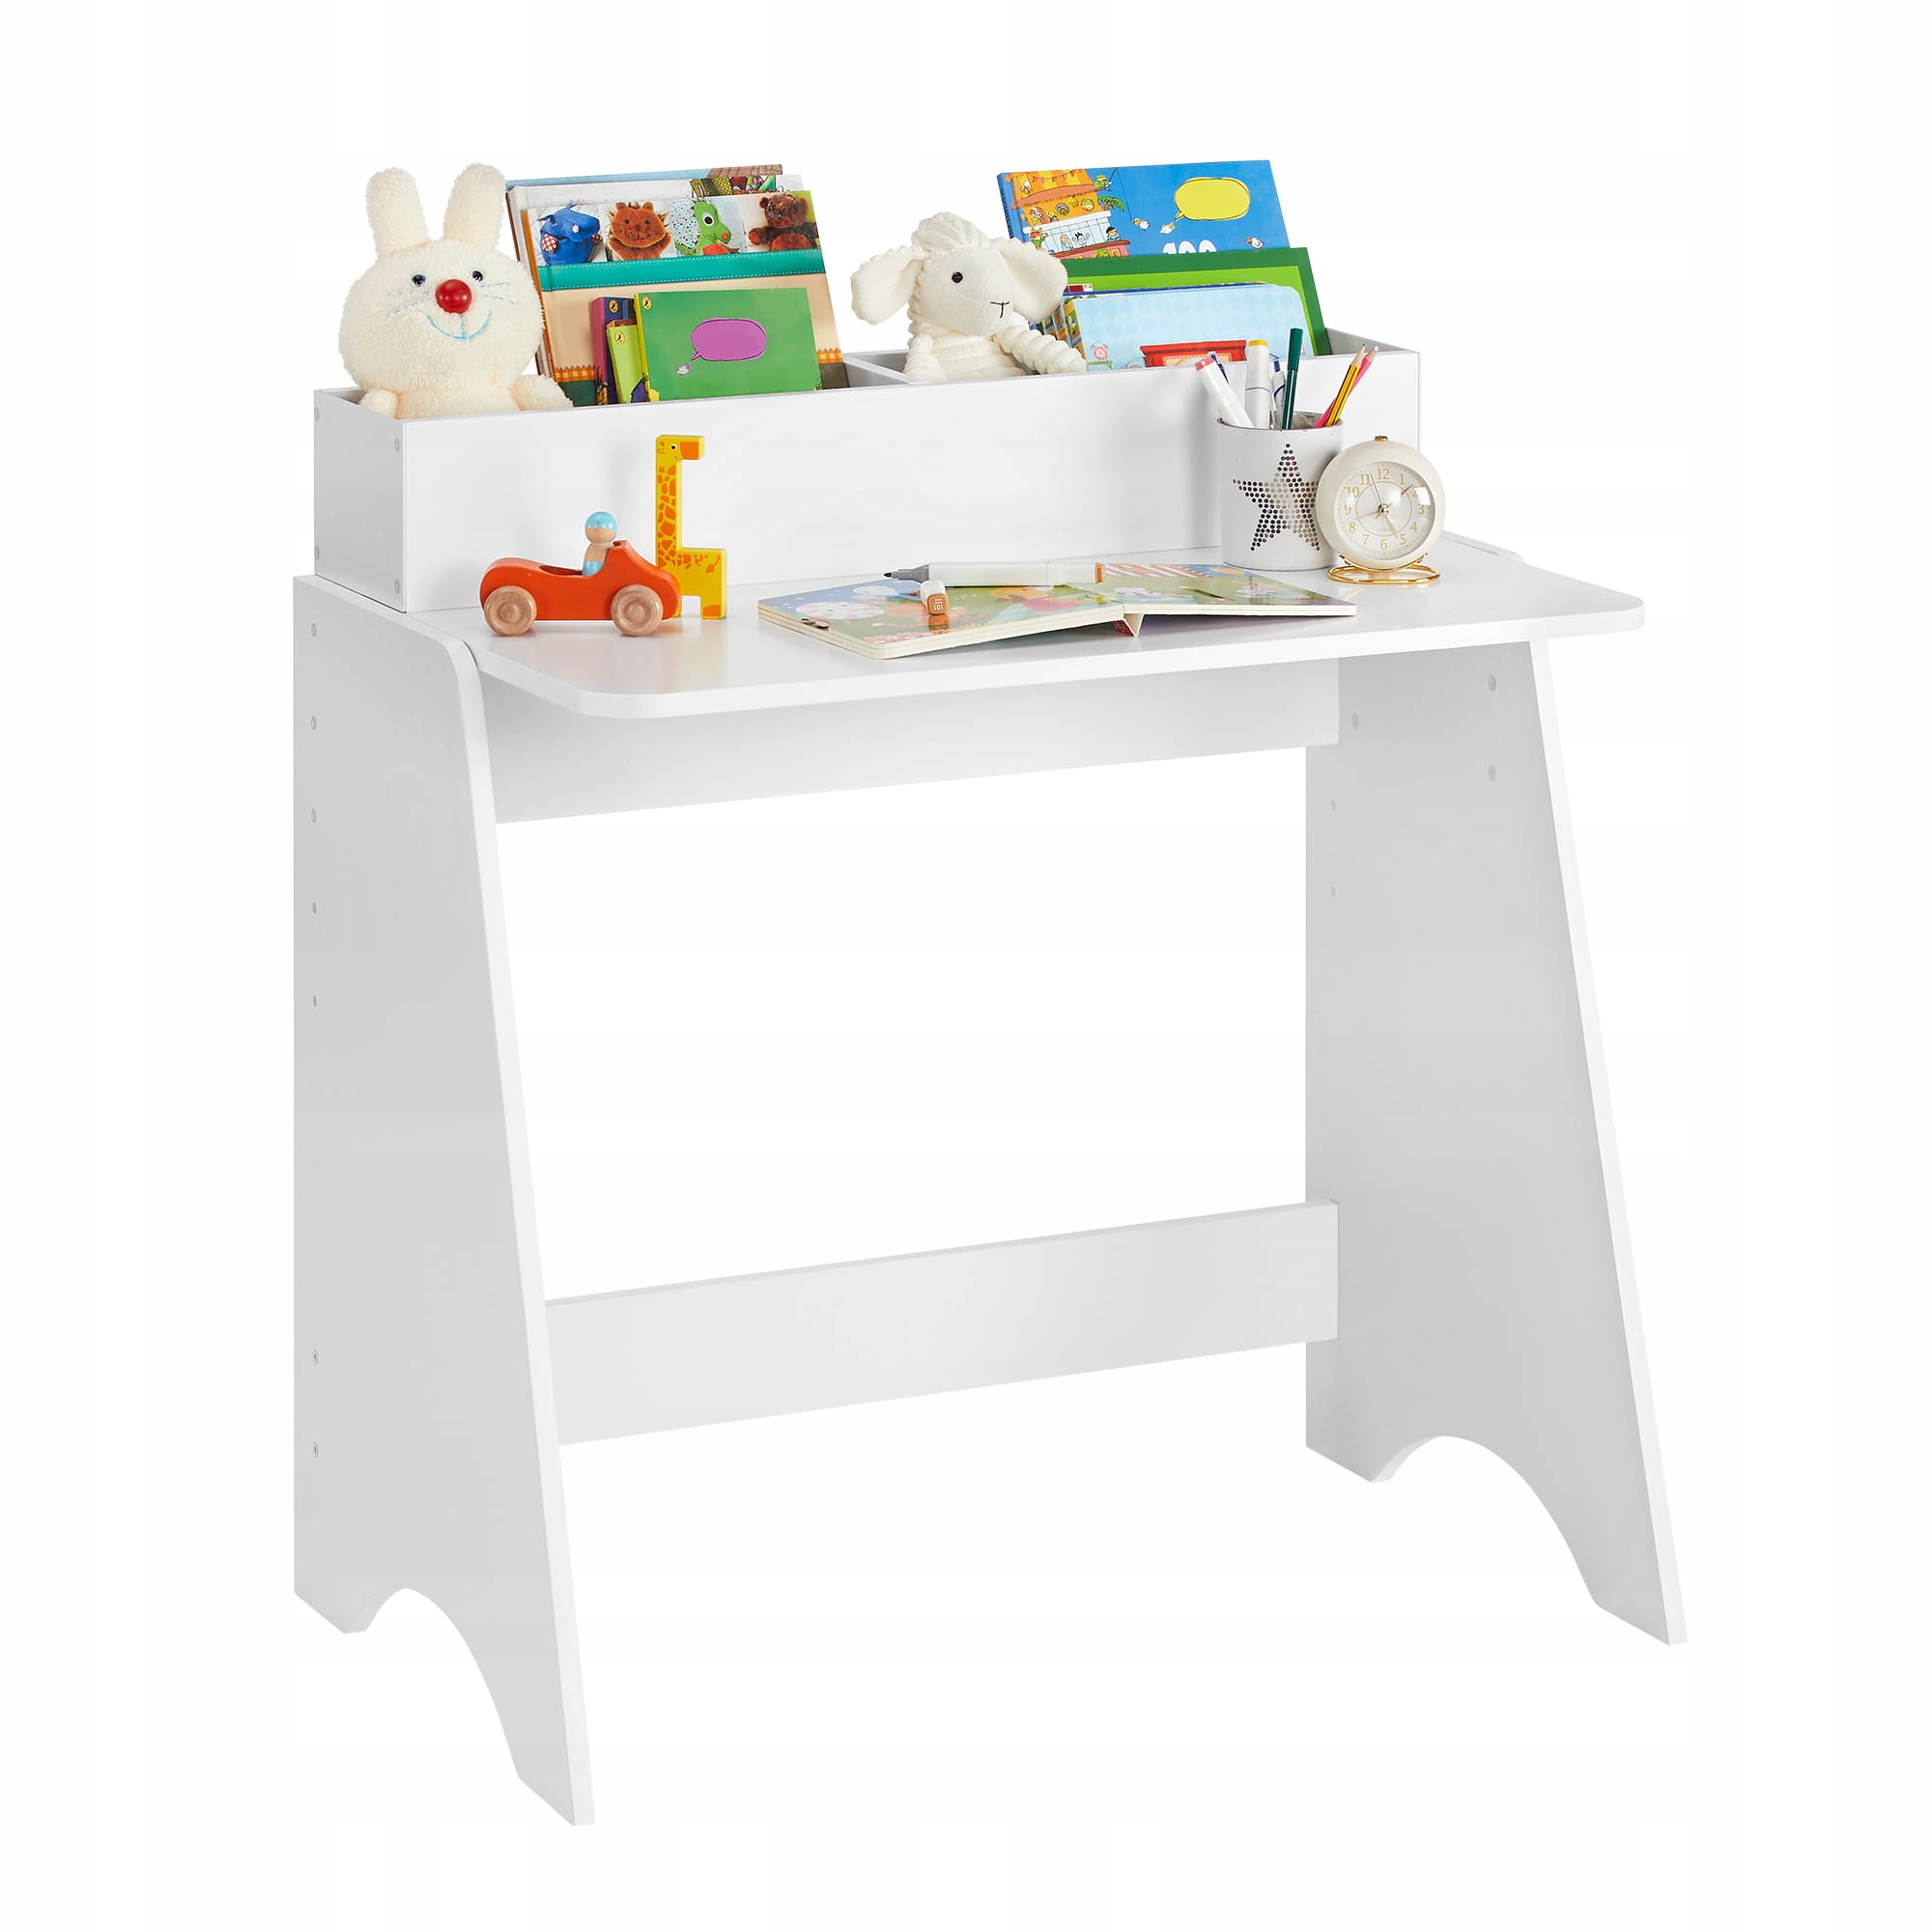 Biely písací stôl pre dieťa malý s poličkou na knihy a pastelky